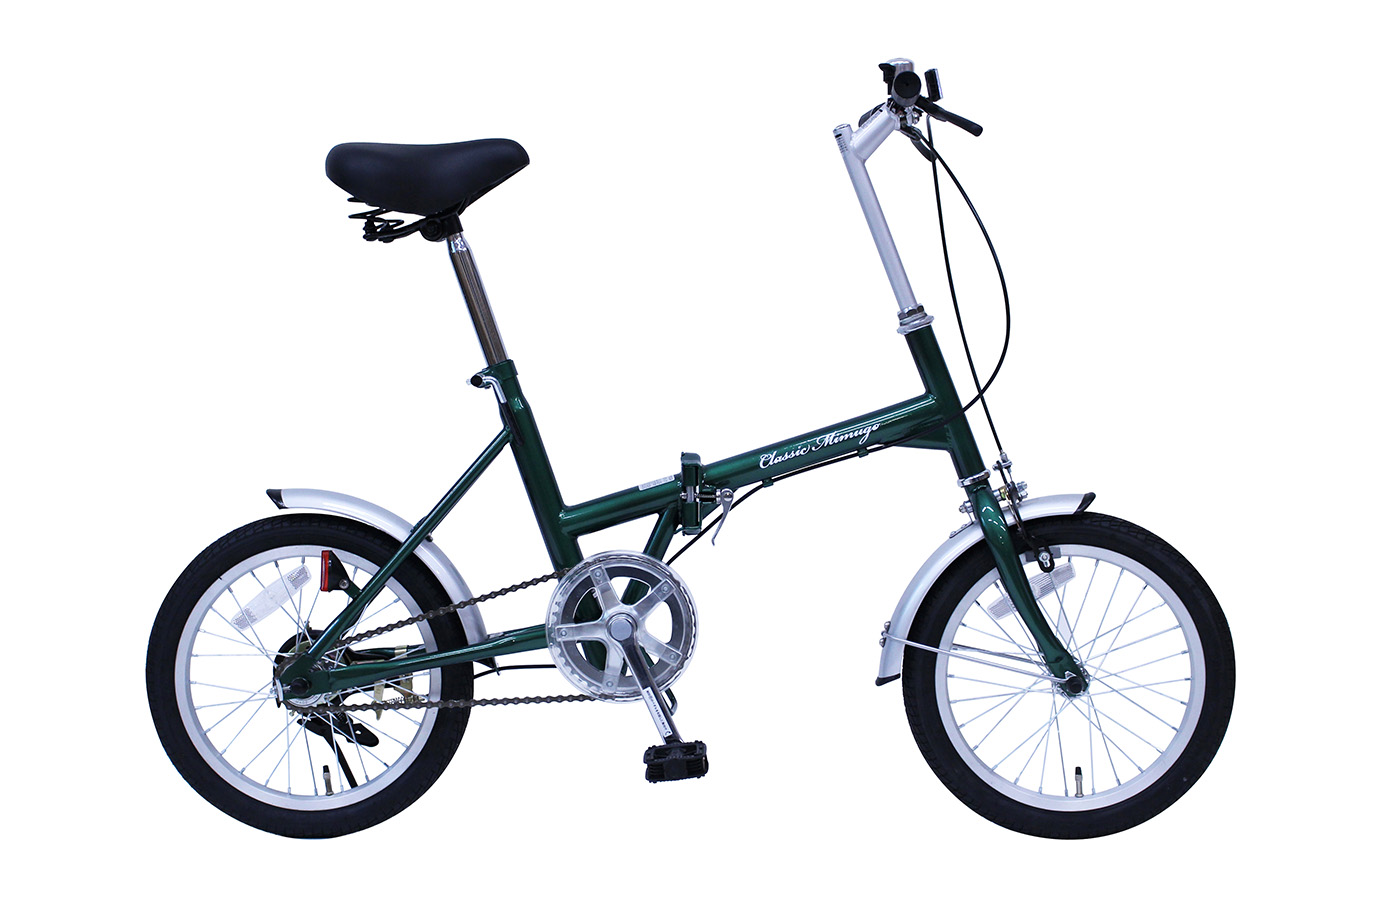 【Classic Mimugo】折りたたみ自転車 16インチ グリーン